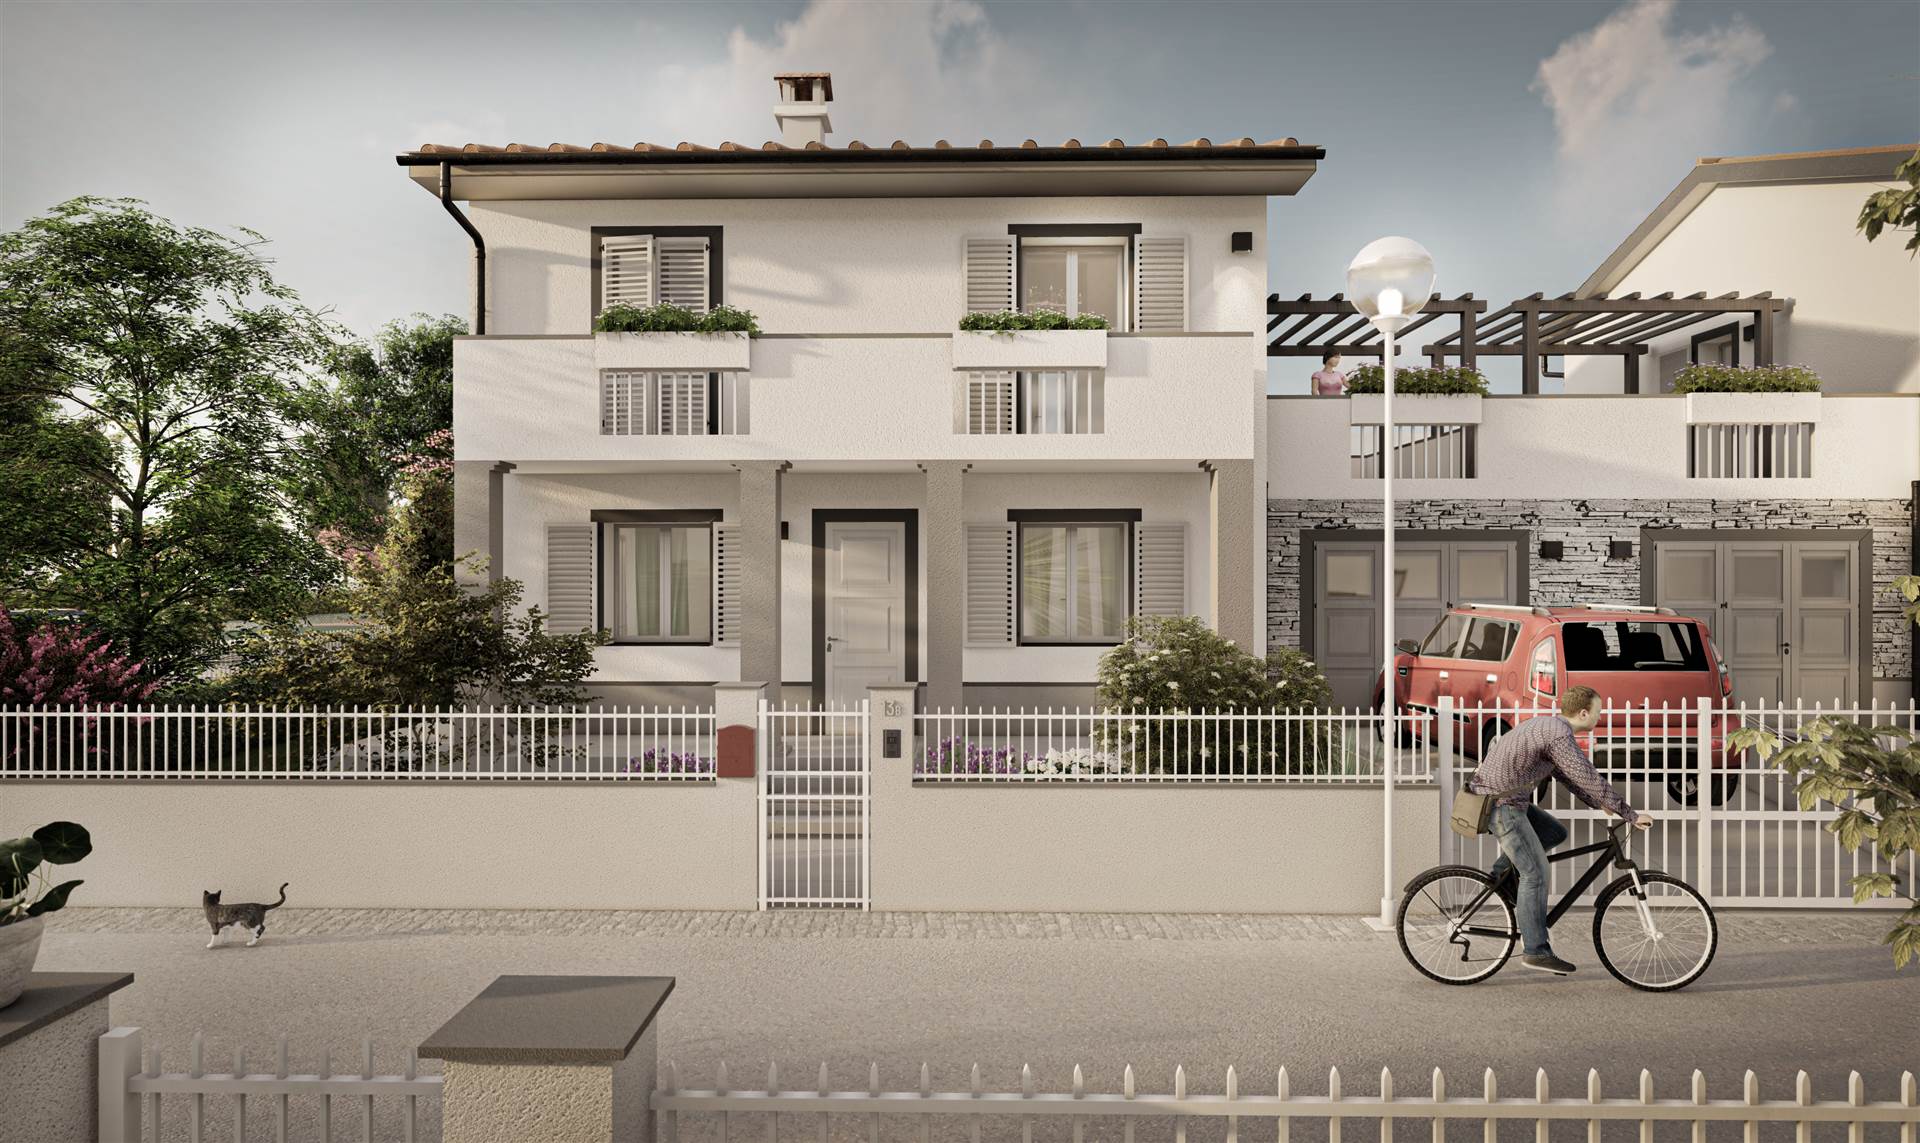 Villa in vendita a Agliana